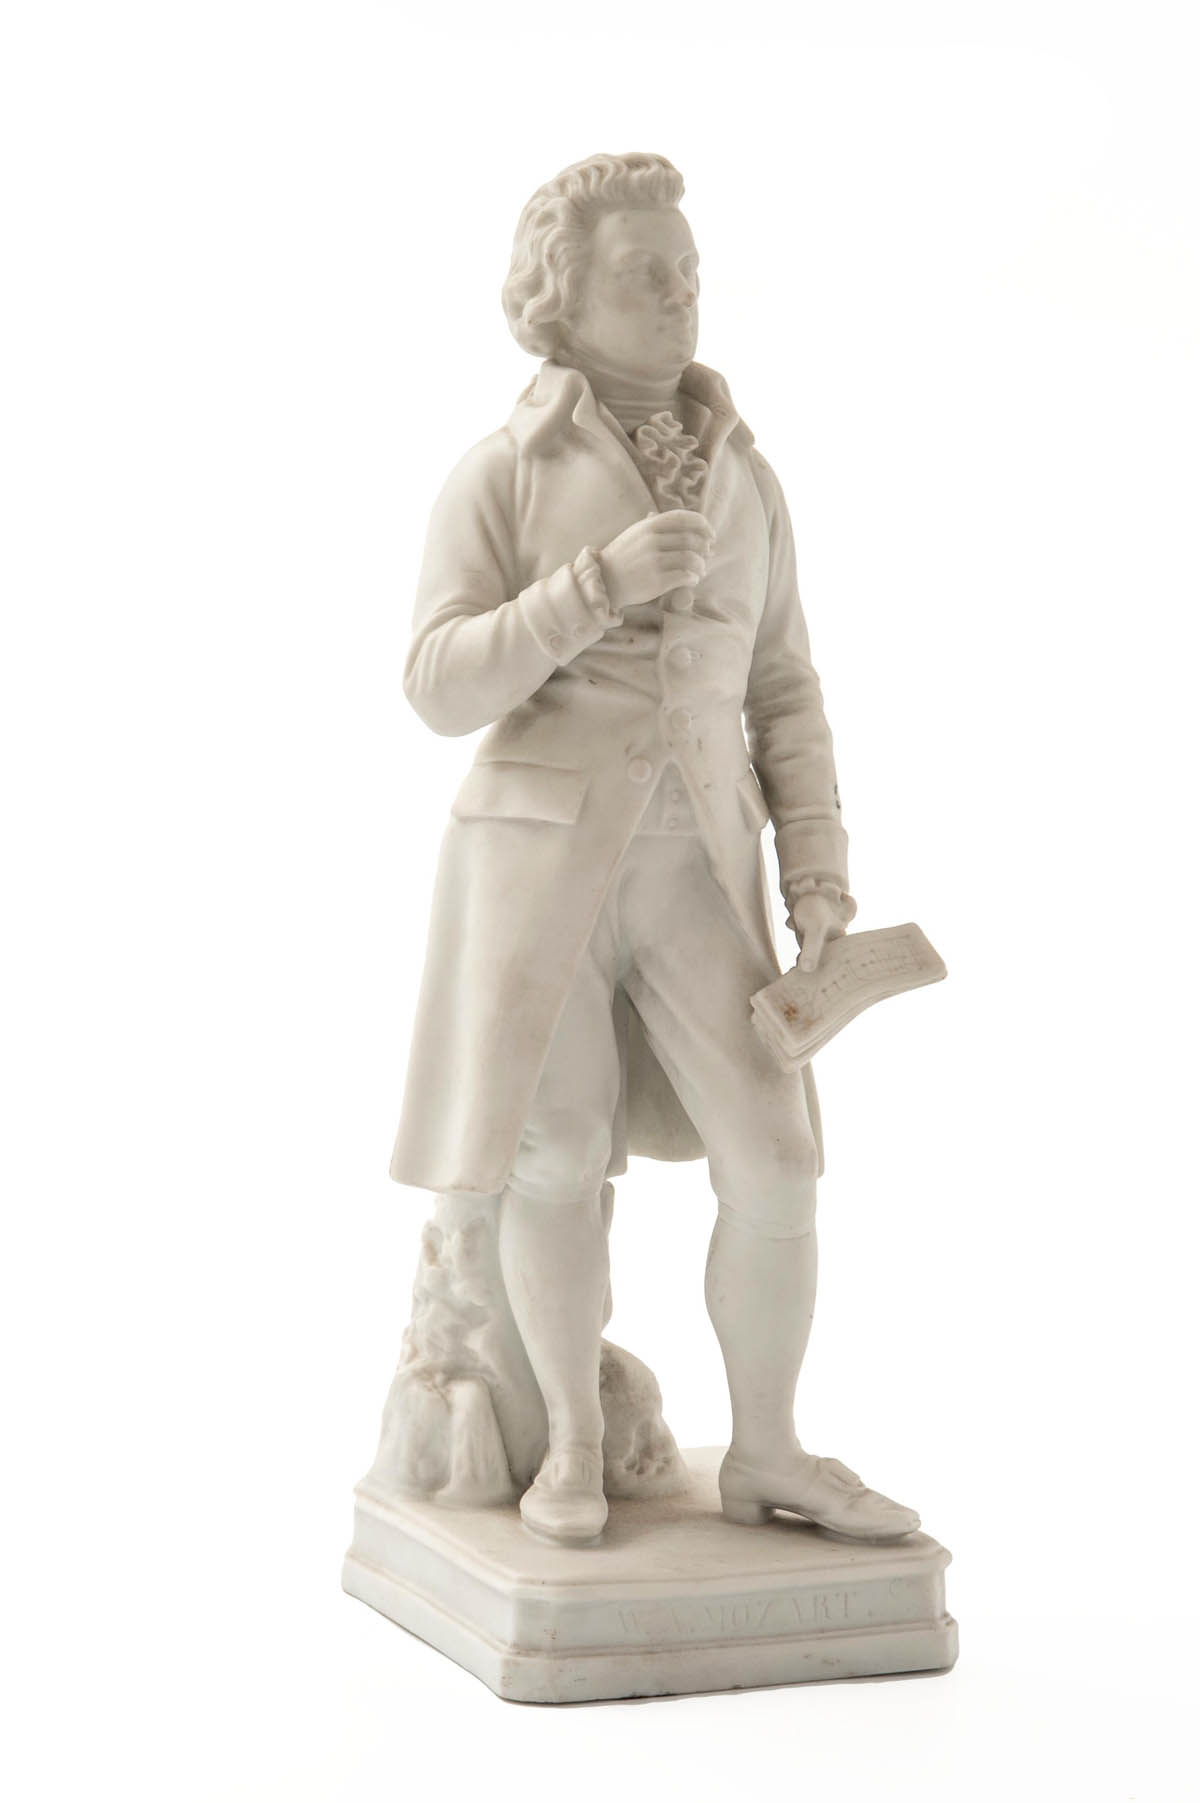 Wolfgang Amadeus Mozart Biskuitporzellan, unbemalt. Auf quadratischem Sockel die Figur des